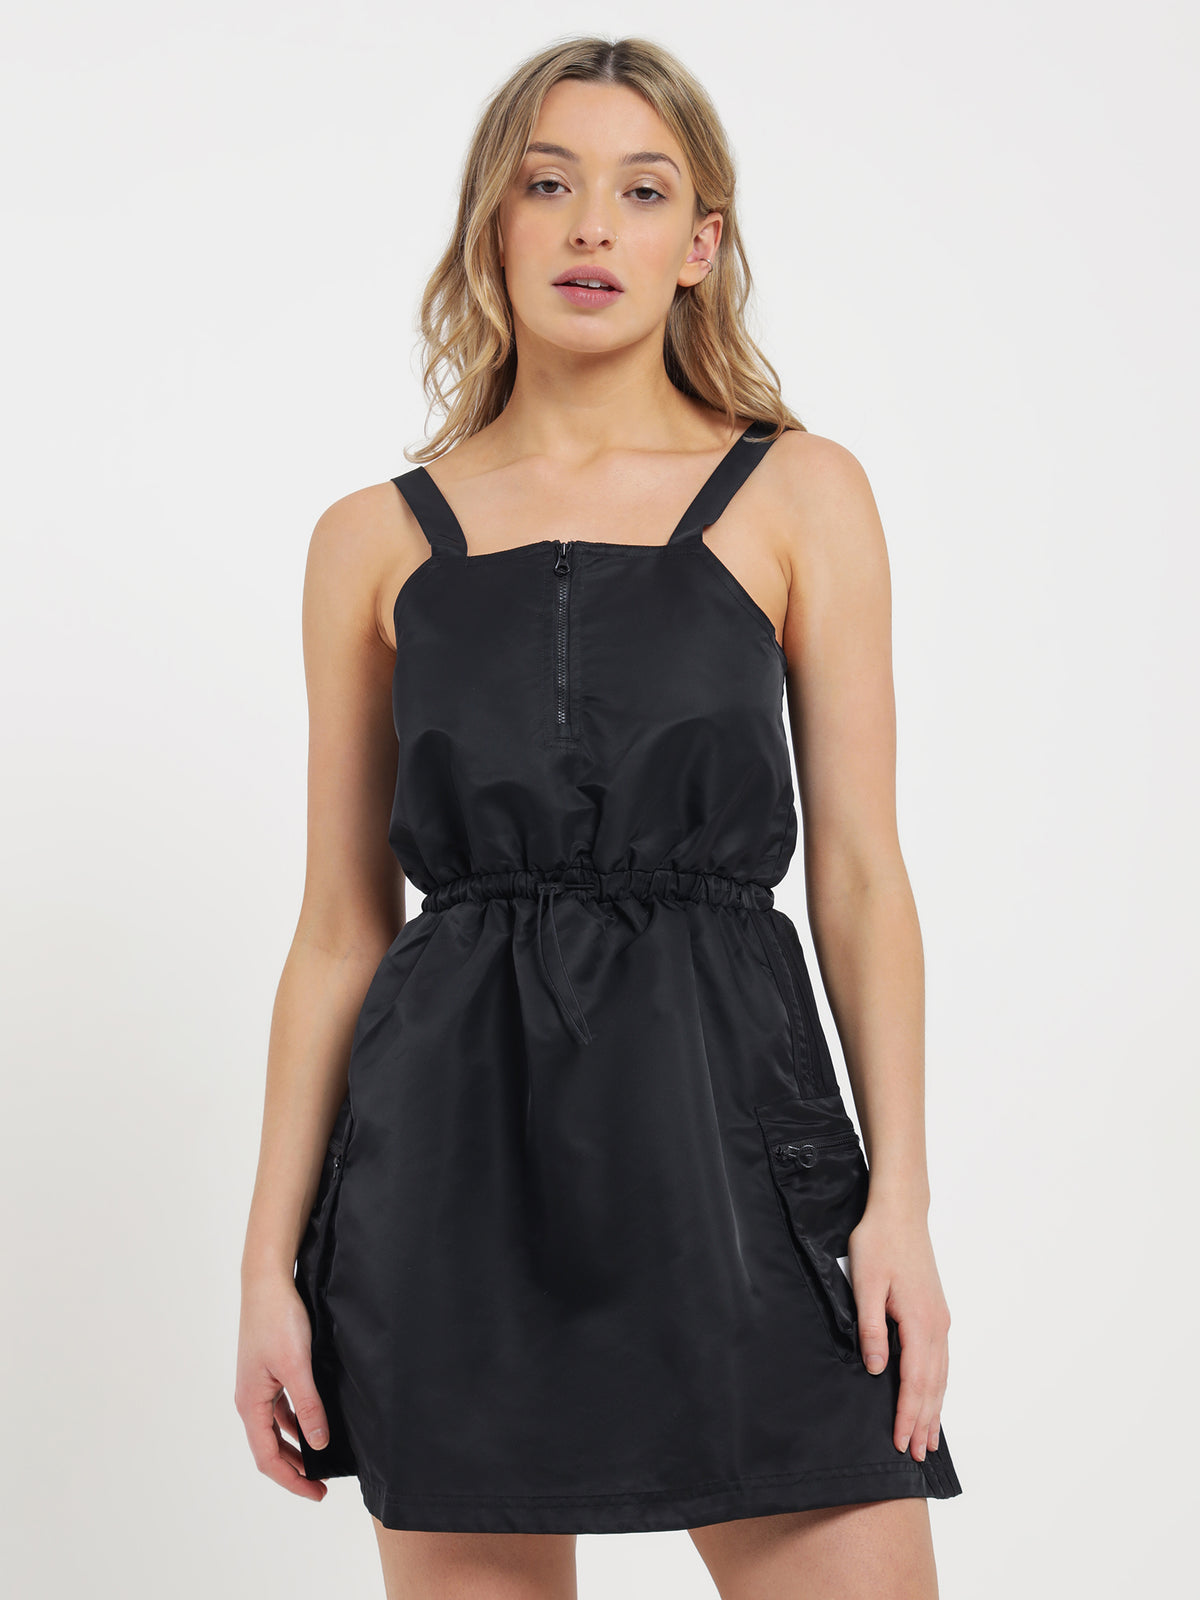 Originals Nylon Dress in Black